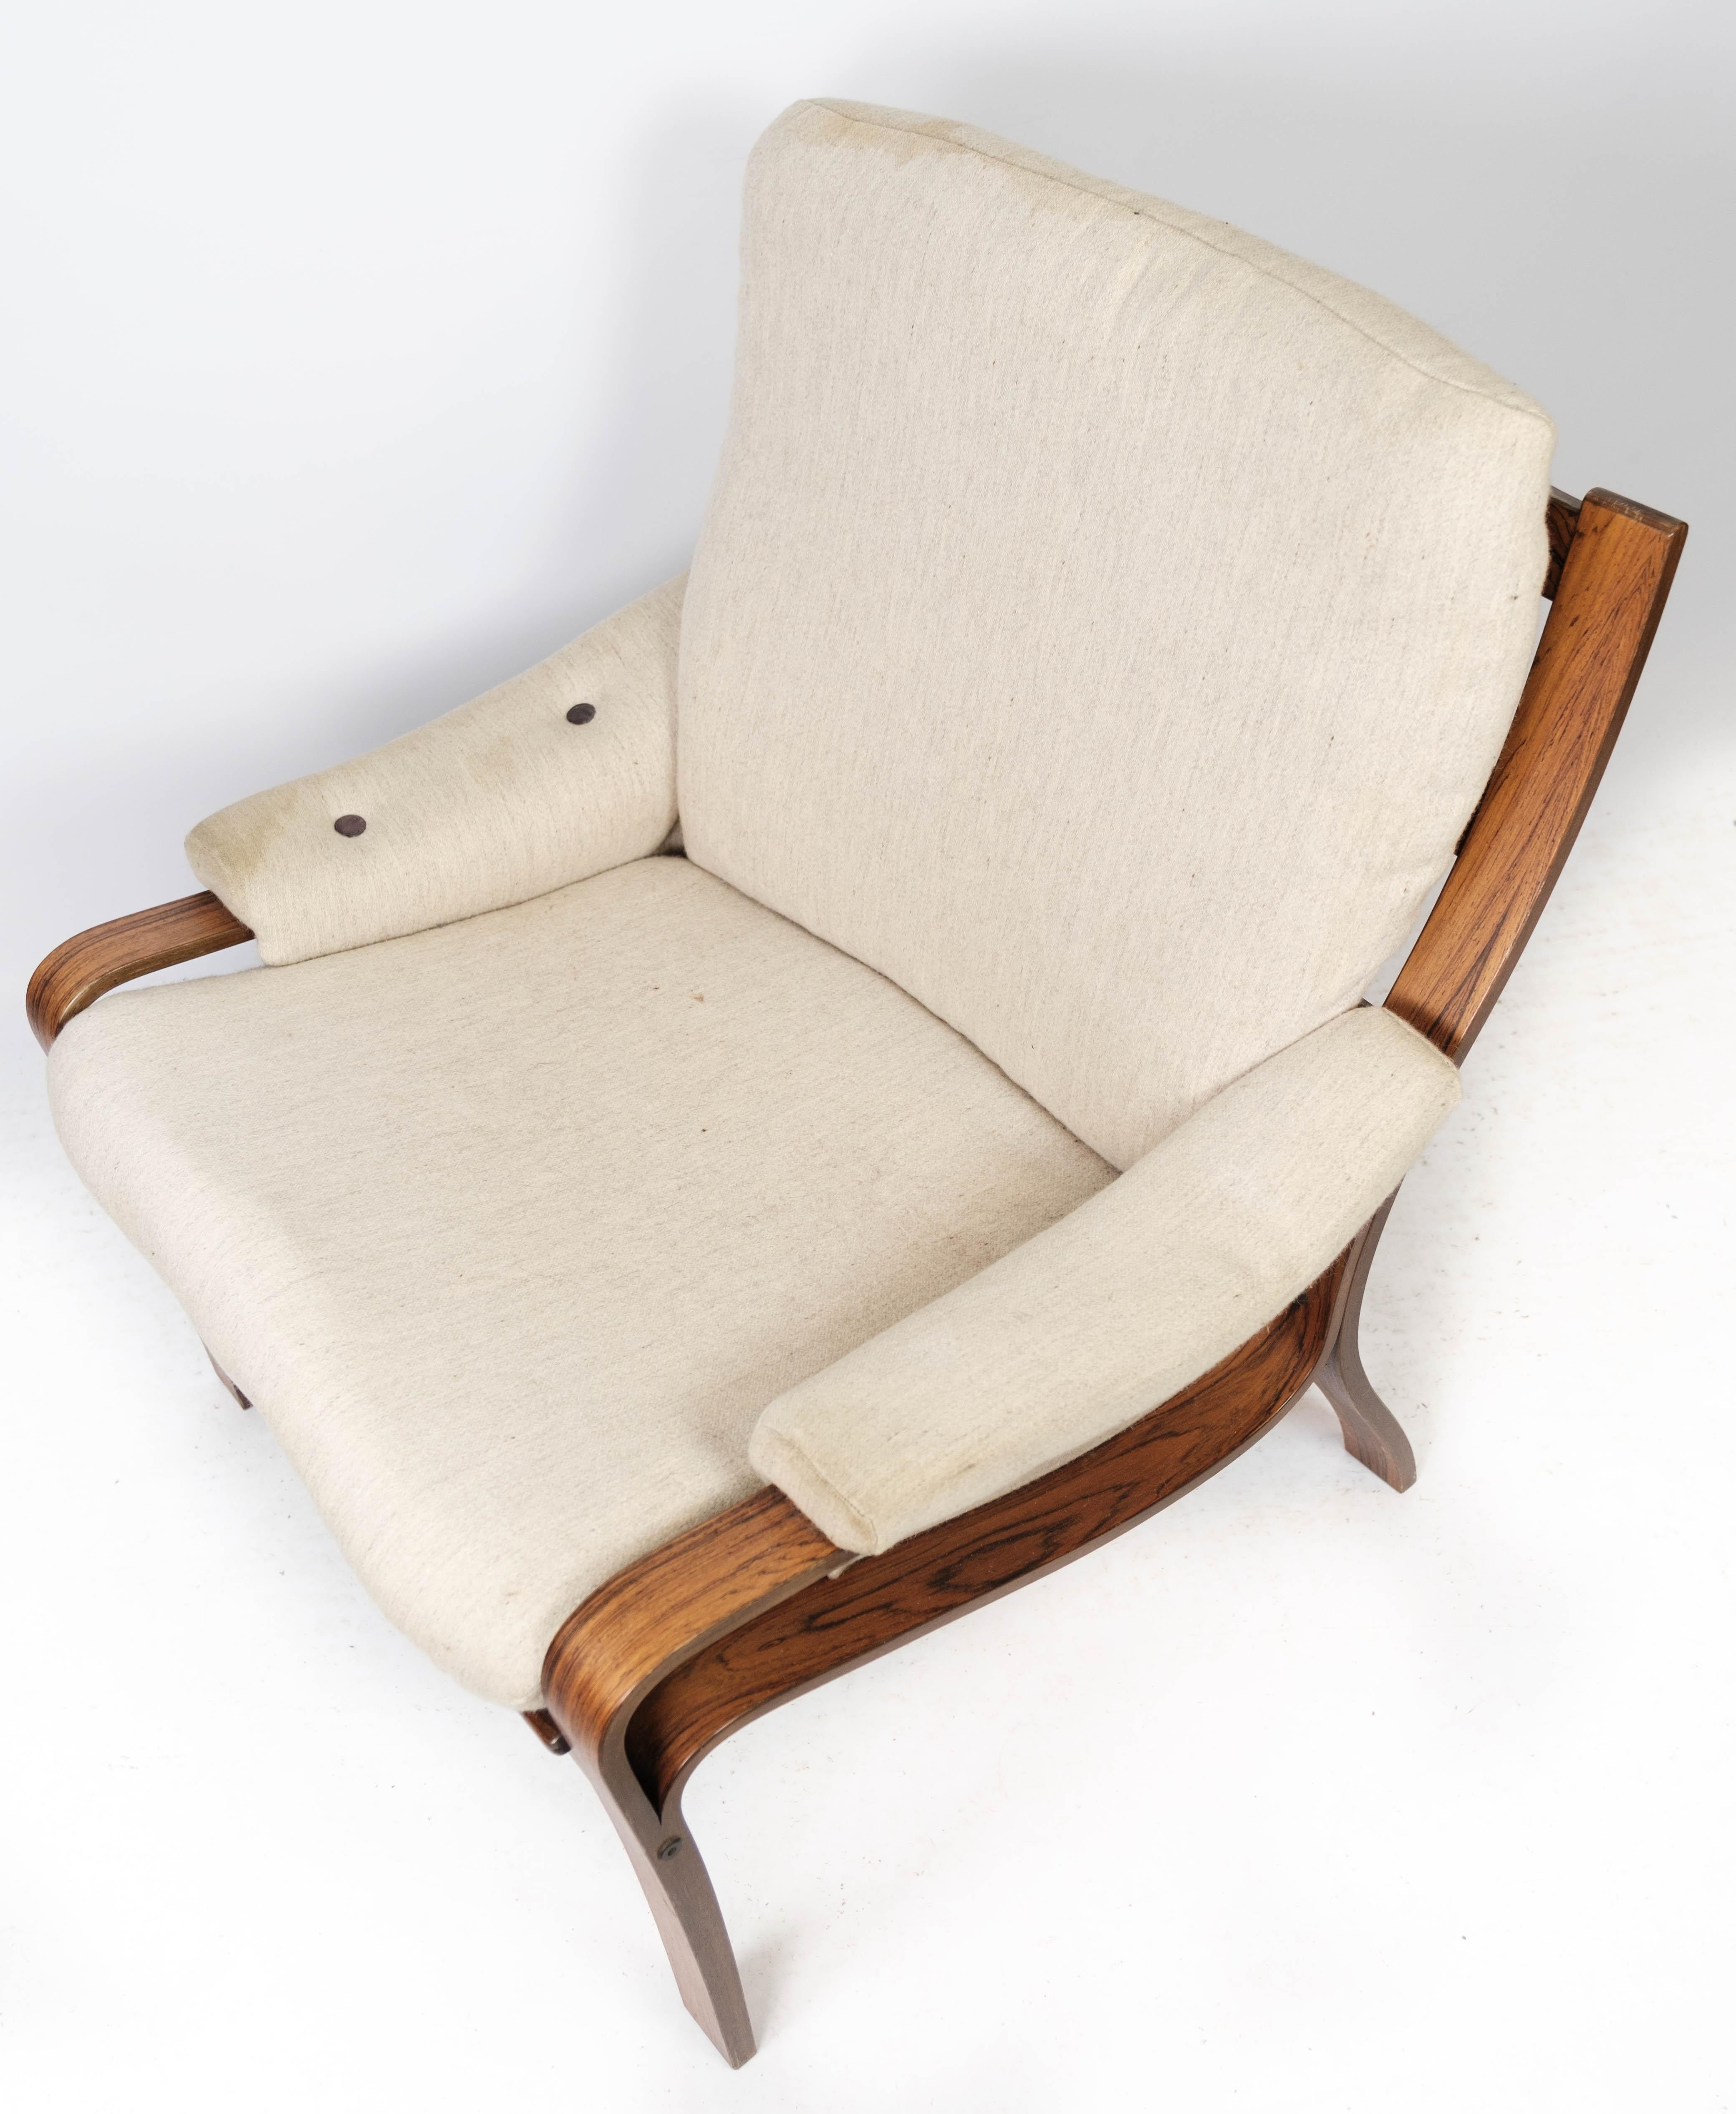 Der mit hellem Stoff bezogene Sessel aus Palisanderholz im dänischen Design der 1960er Jahre ist ein elegantes und bequemes Möbelstück, das zeitlose Schönheit und Handwerkskunst ausstrahlt.

Die warmen Farbtöne und das schöne natürliche Muster des